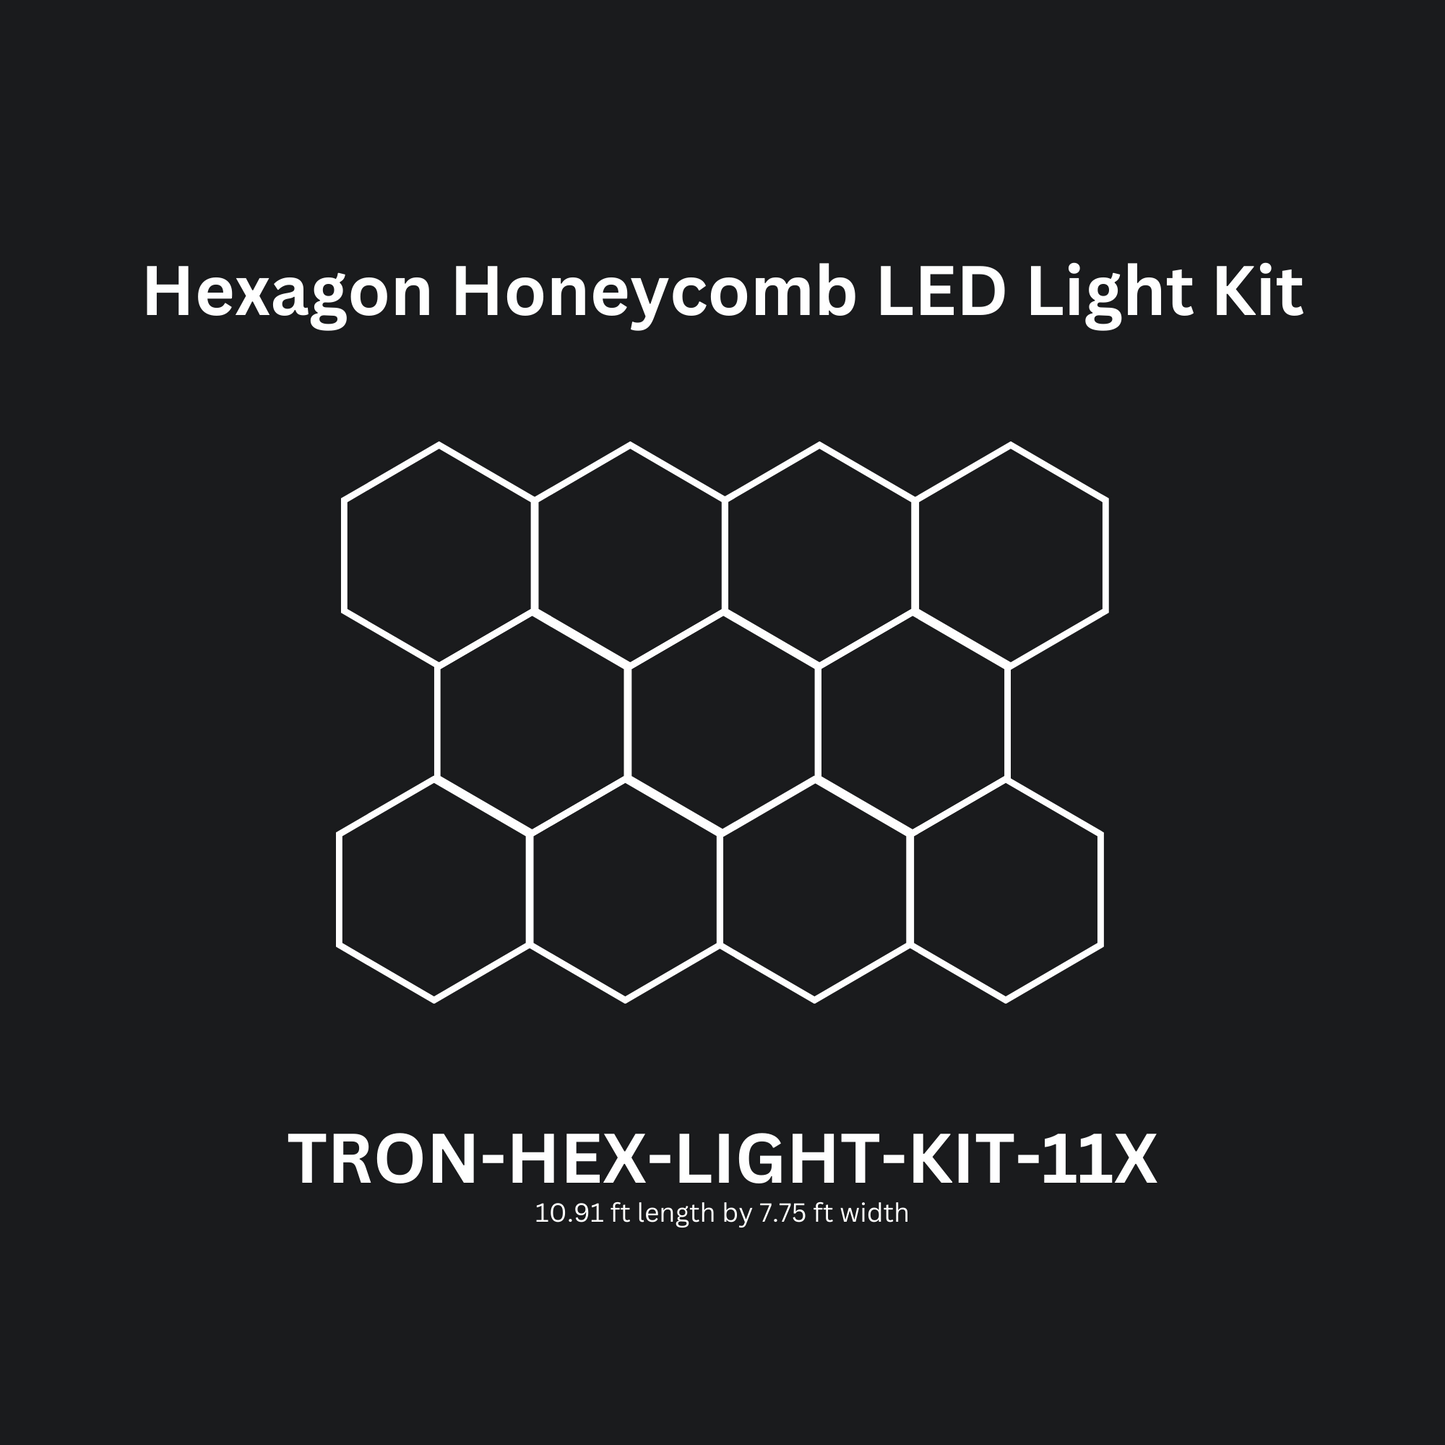 11x (Eleven) Hexagon LED Light Kit, No Border, Grid Series, Super Bright Daylight White 6500K, TRON-HEX-LIGHT-KIT-11X